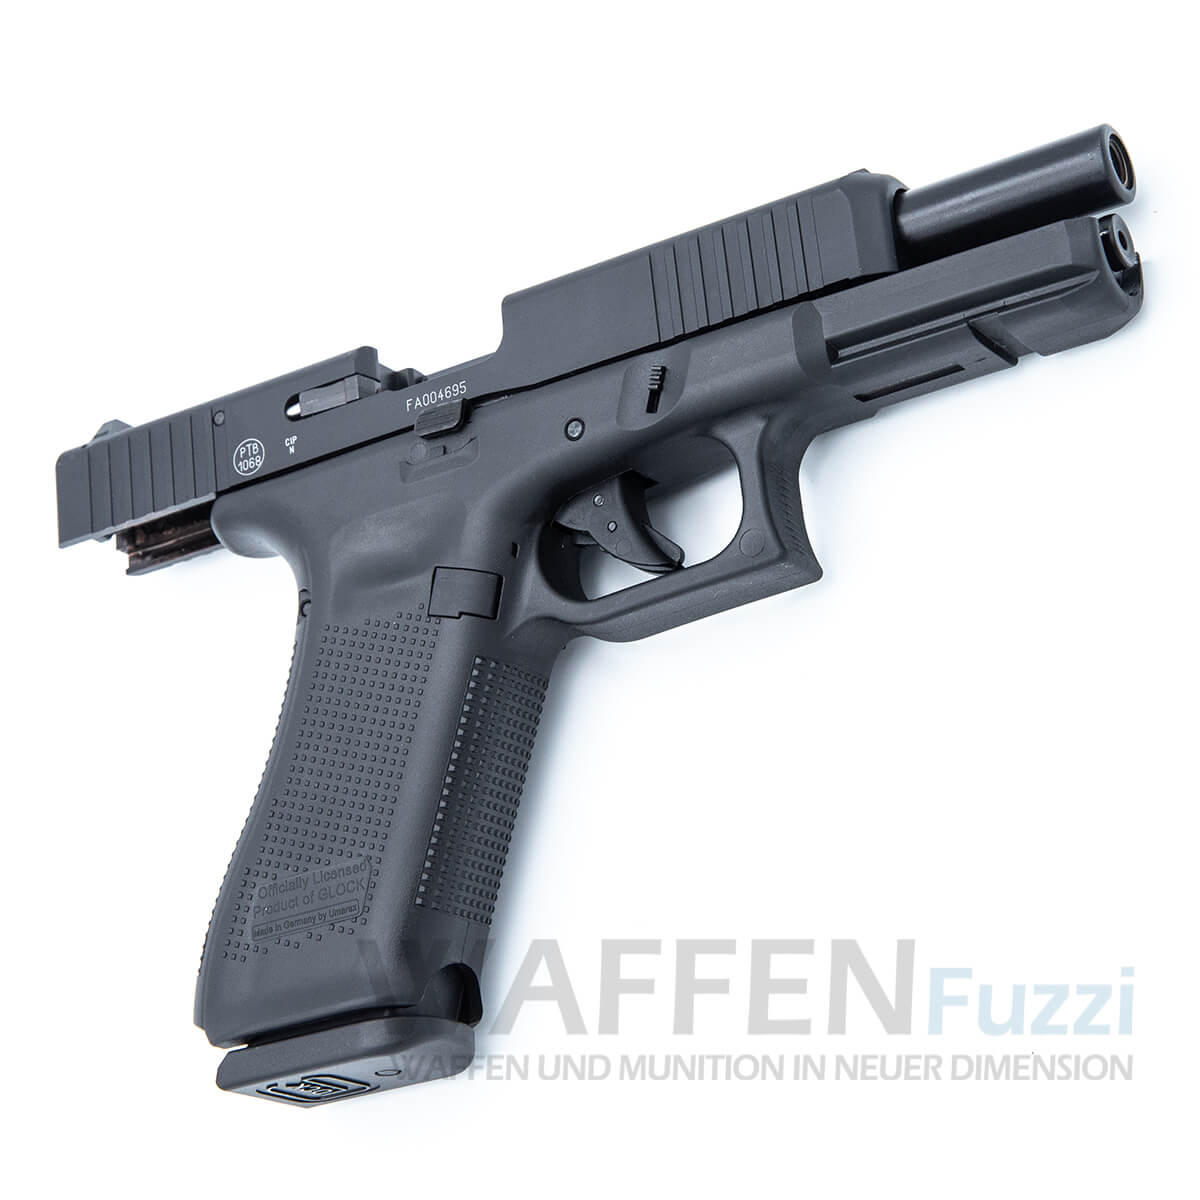 Glock Pistole 9mm P.A.K. preiswert bei Waffenfuzzi.de